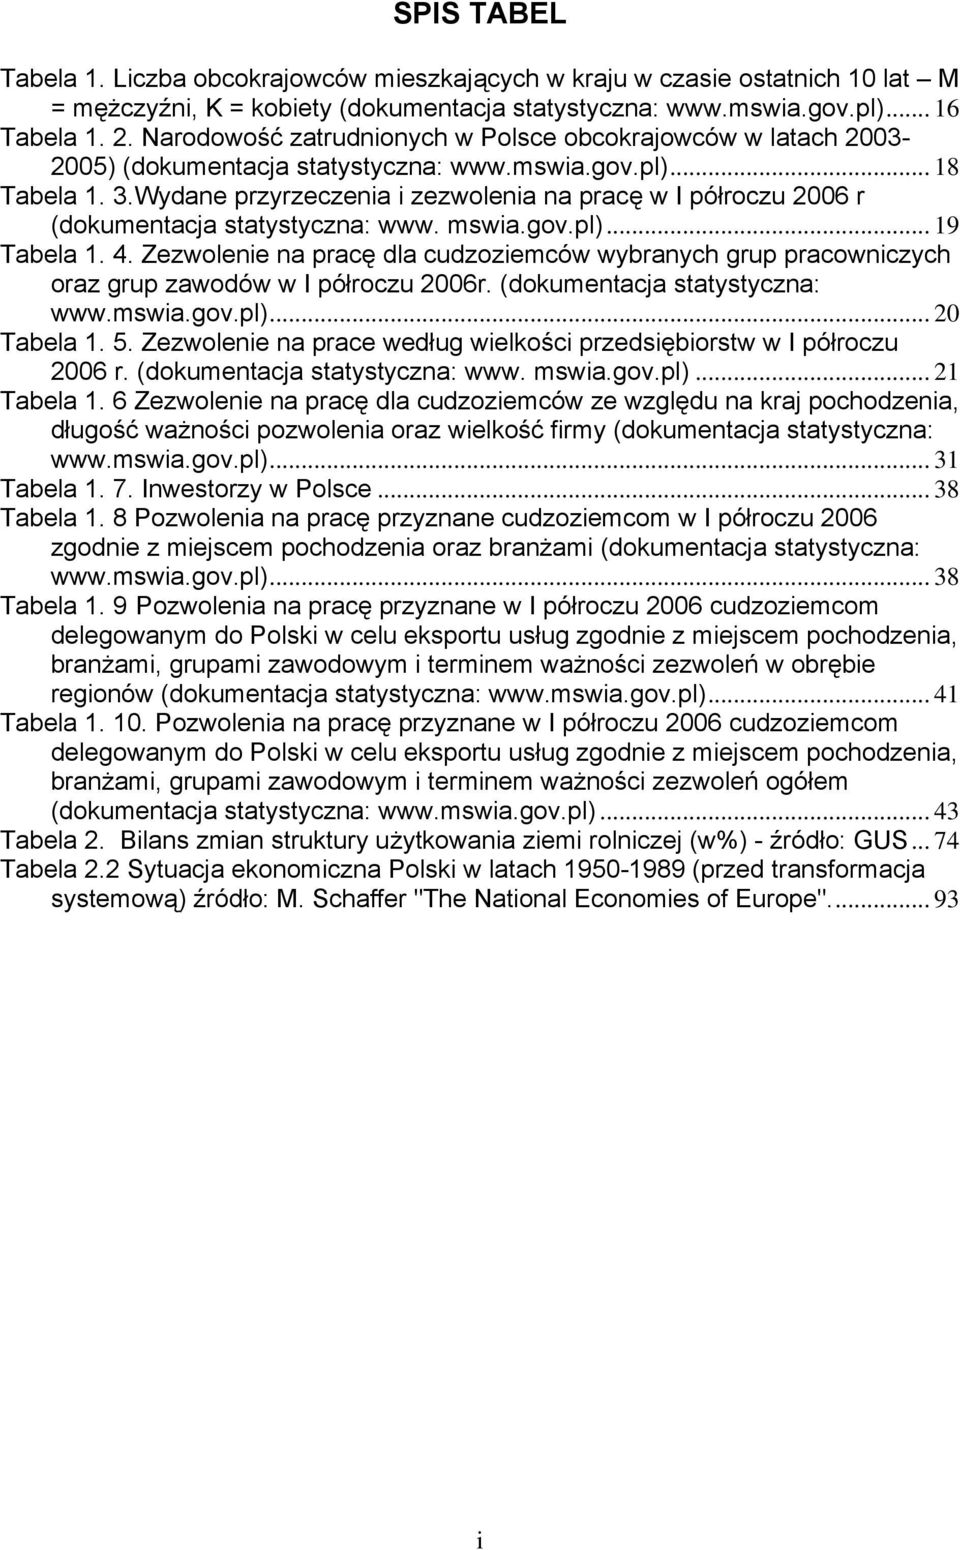 Wydane przyrzeczenia i zezwolenia na pracę w I półroczu 2006 r (dokumentacja statystyczna: www. mswia.gov.pl)... 19 Tabela 1. 4.